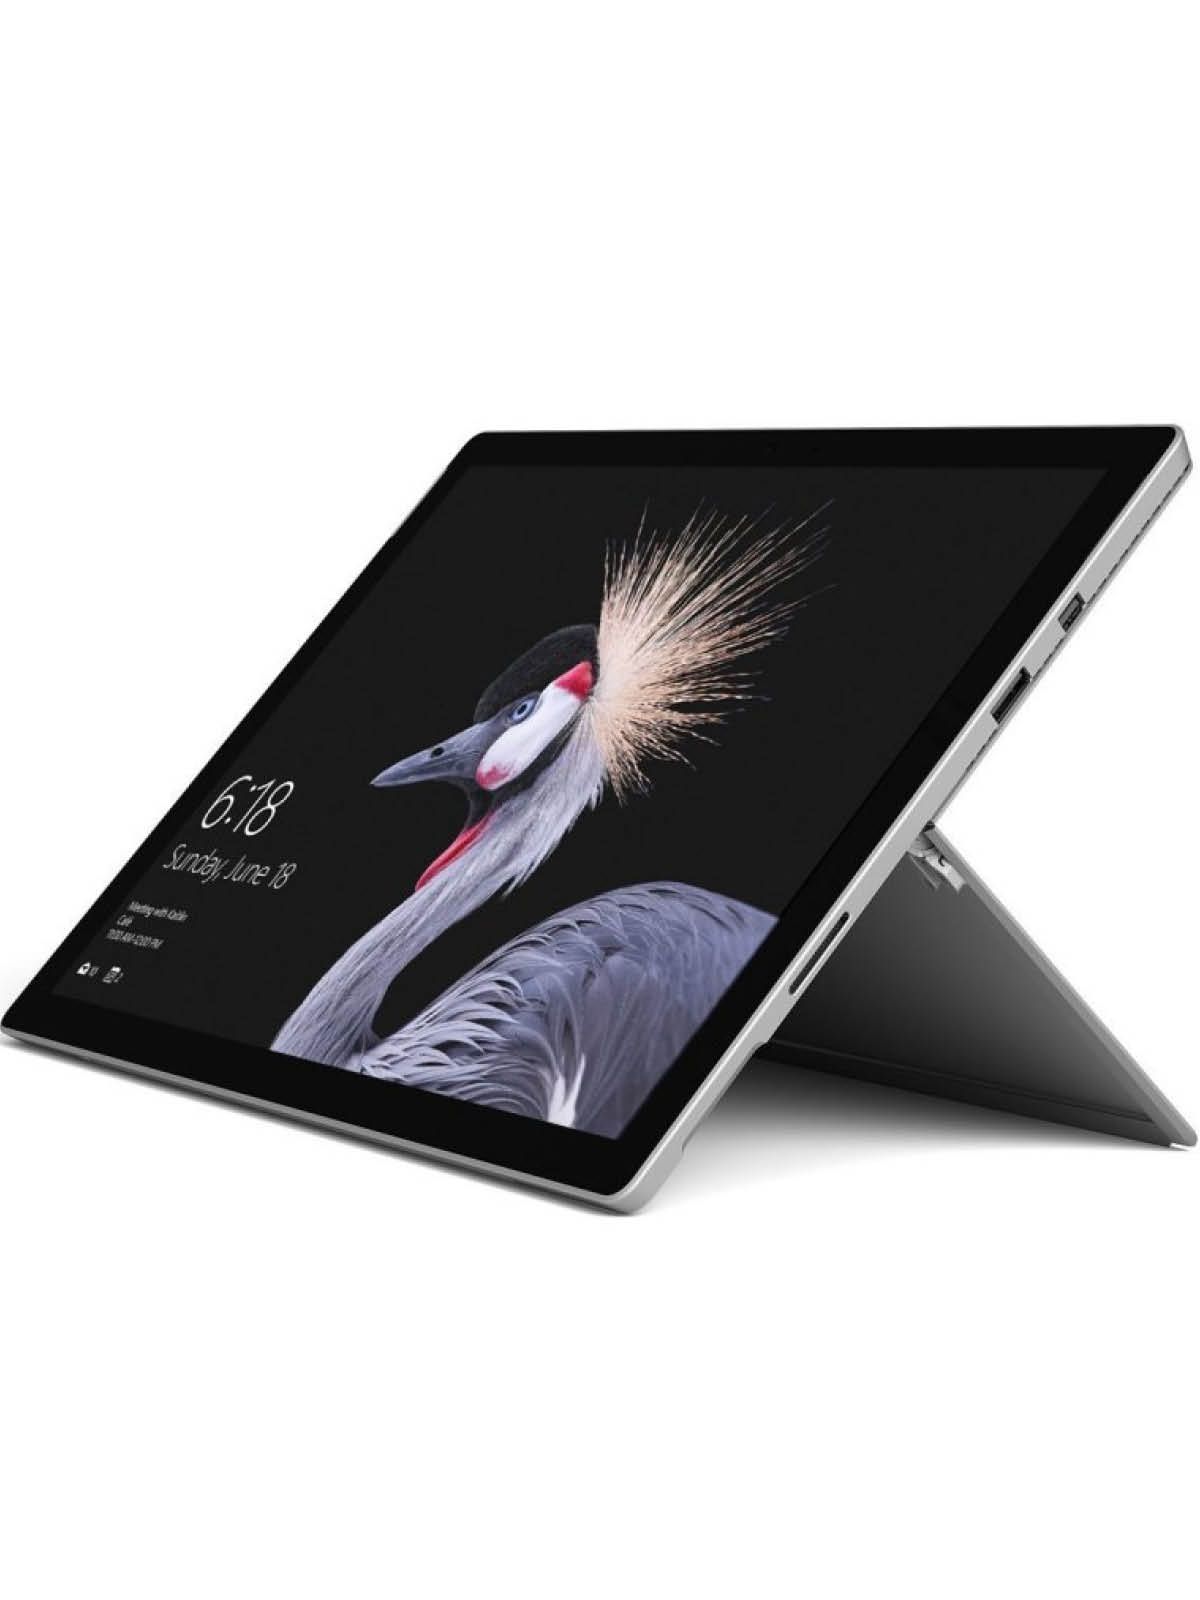 Microsoft Surface Pro 5 Gerätehalter